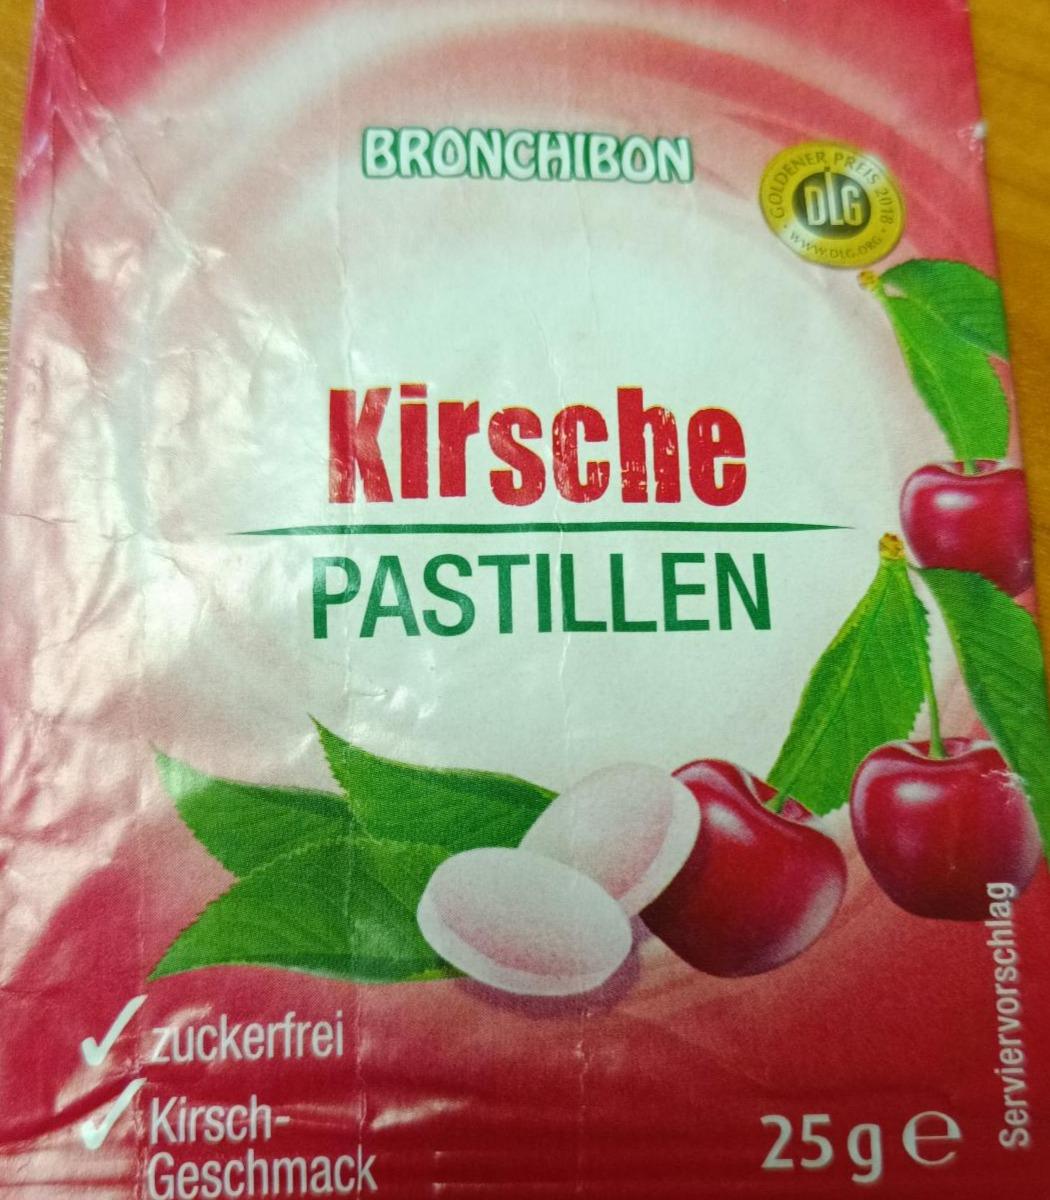 Fotografie - Kirsche pastillen Bronchibon